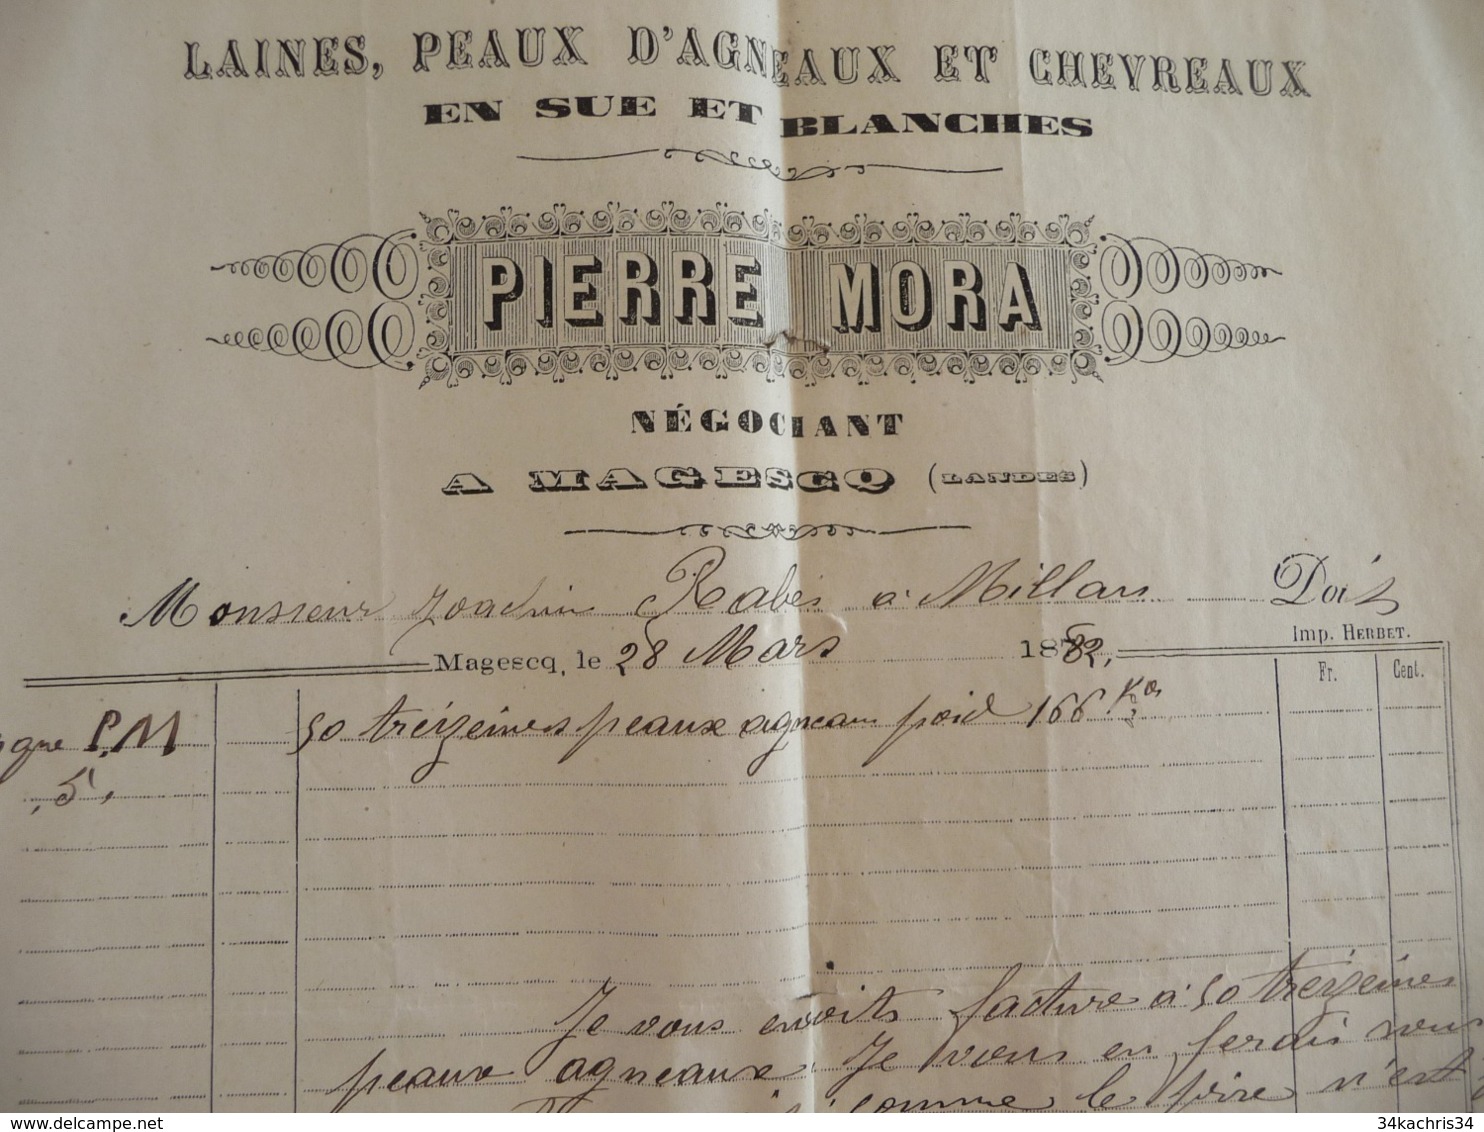 Facture Agriculture Pierre Mora Laines Peaux D'agneau Et Chevreaux 1882 Magesq Landes - Agriculture